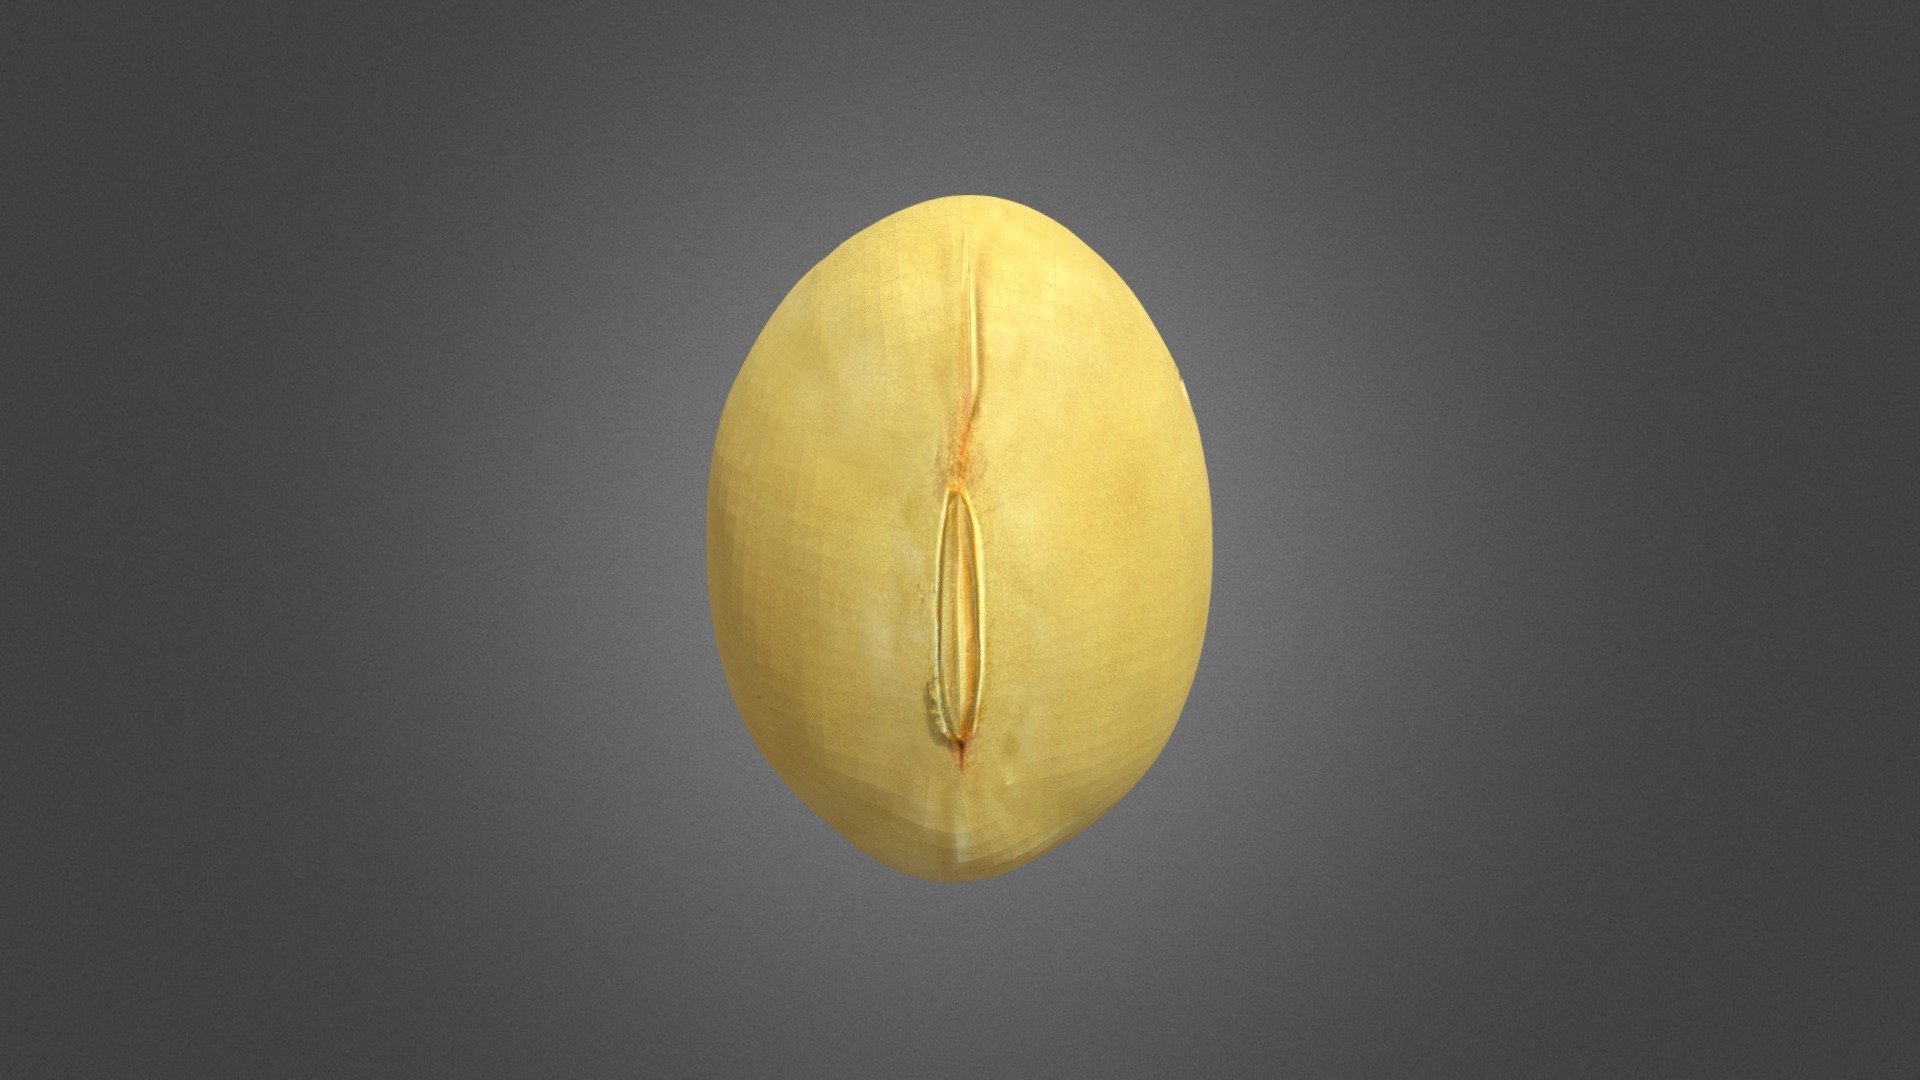 Soybean Yellow Bean - Soybean Yellow Bean - Buy Royalty Free 3D model by misitewang 3d model